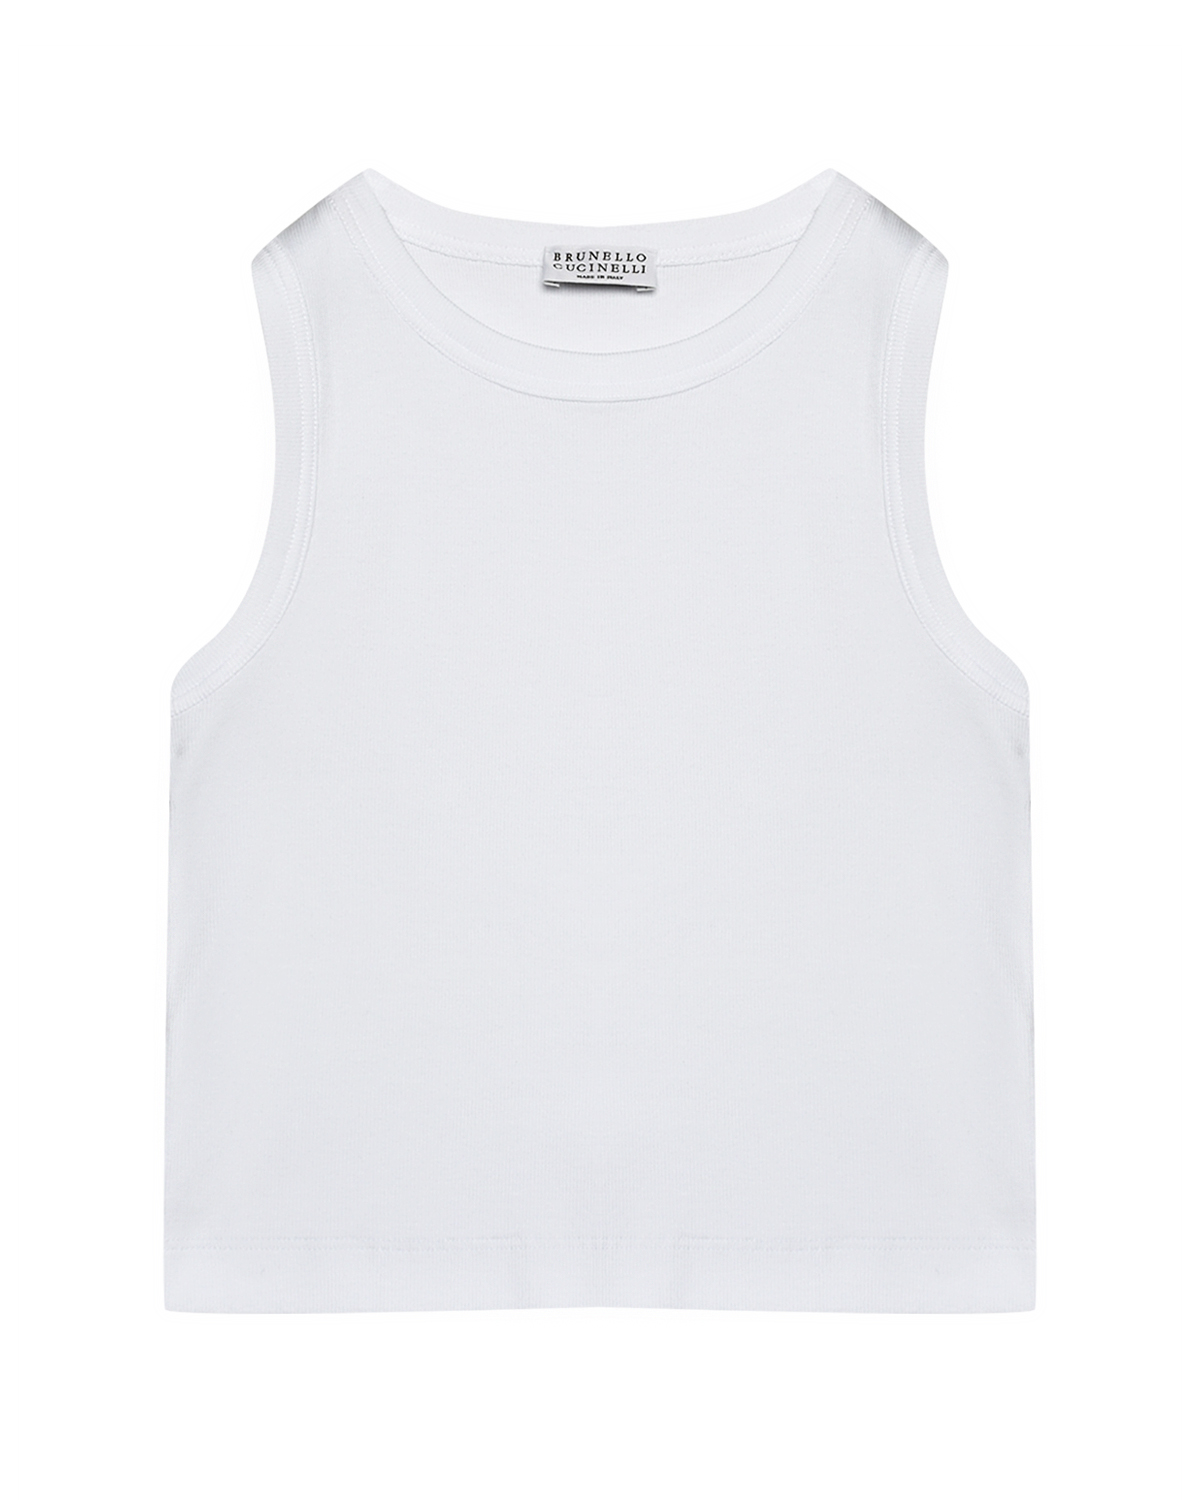 Футболка без рукавов, белая Brunello Cucinelli футболка со стразами на кармане белая brunello cucinelli